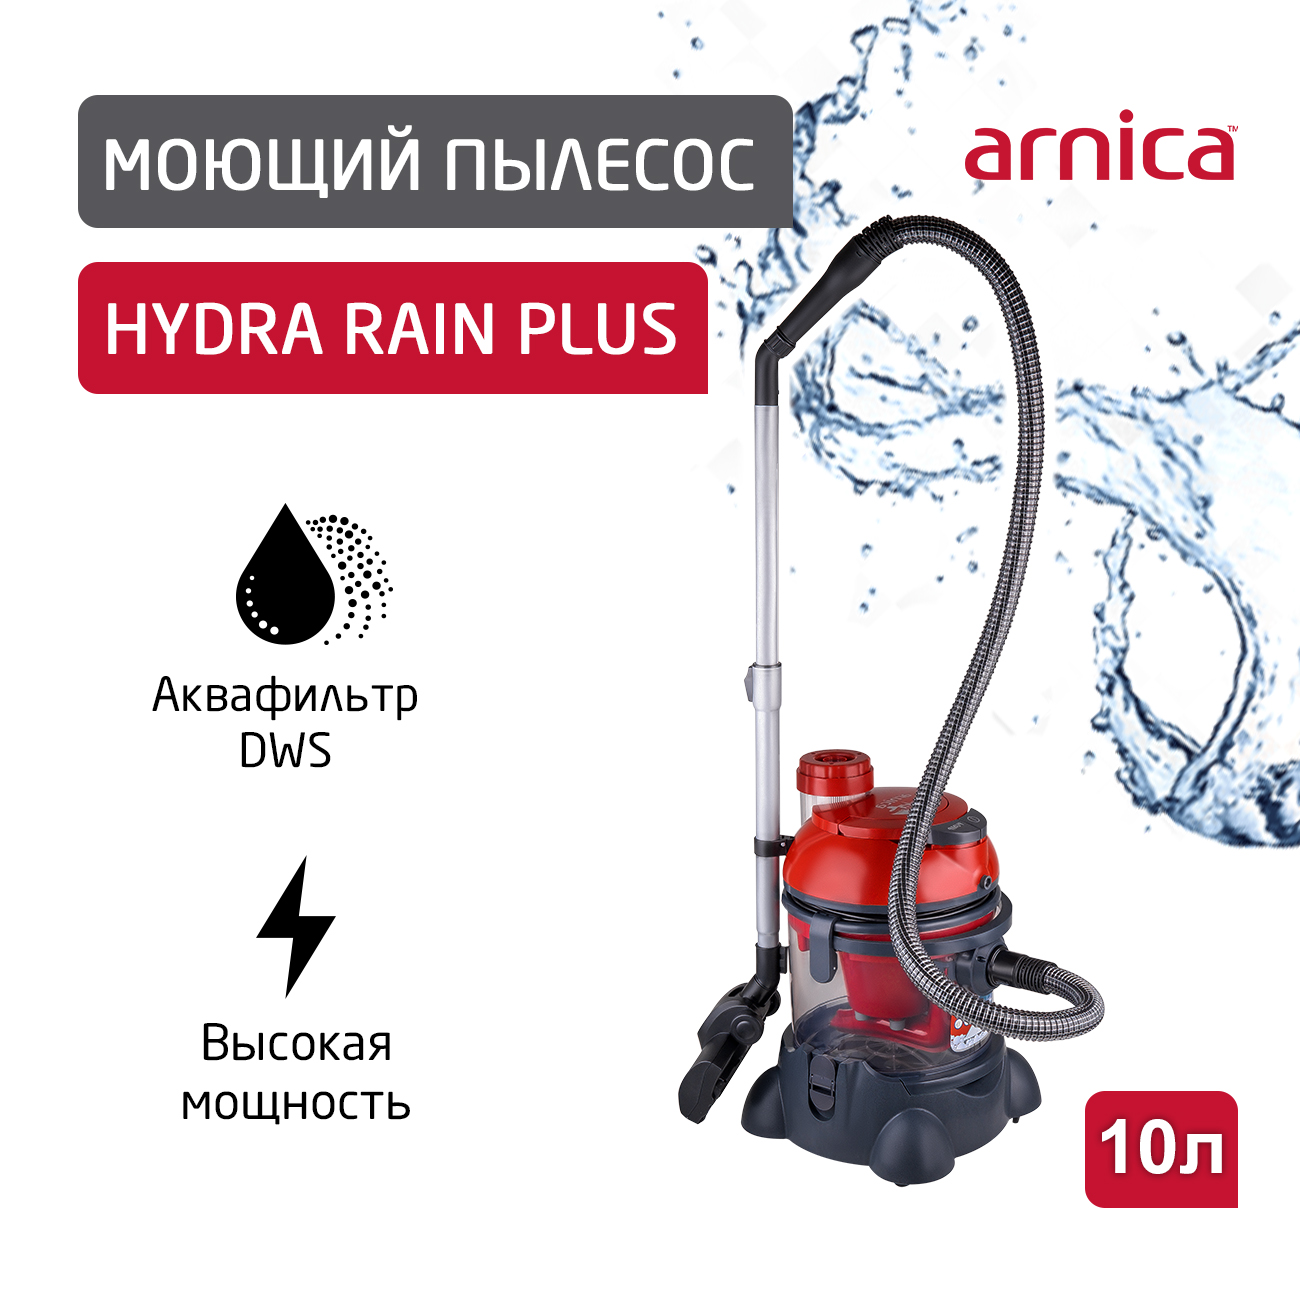 Пылесос ARNICA Hydra Rain Plus красный пылесос моющий arnica hydra rain arn 001 g